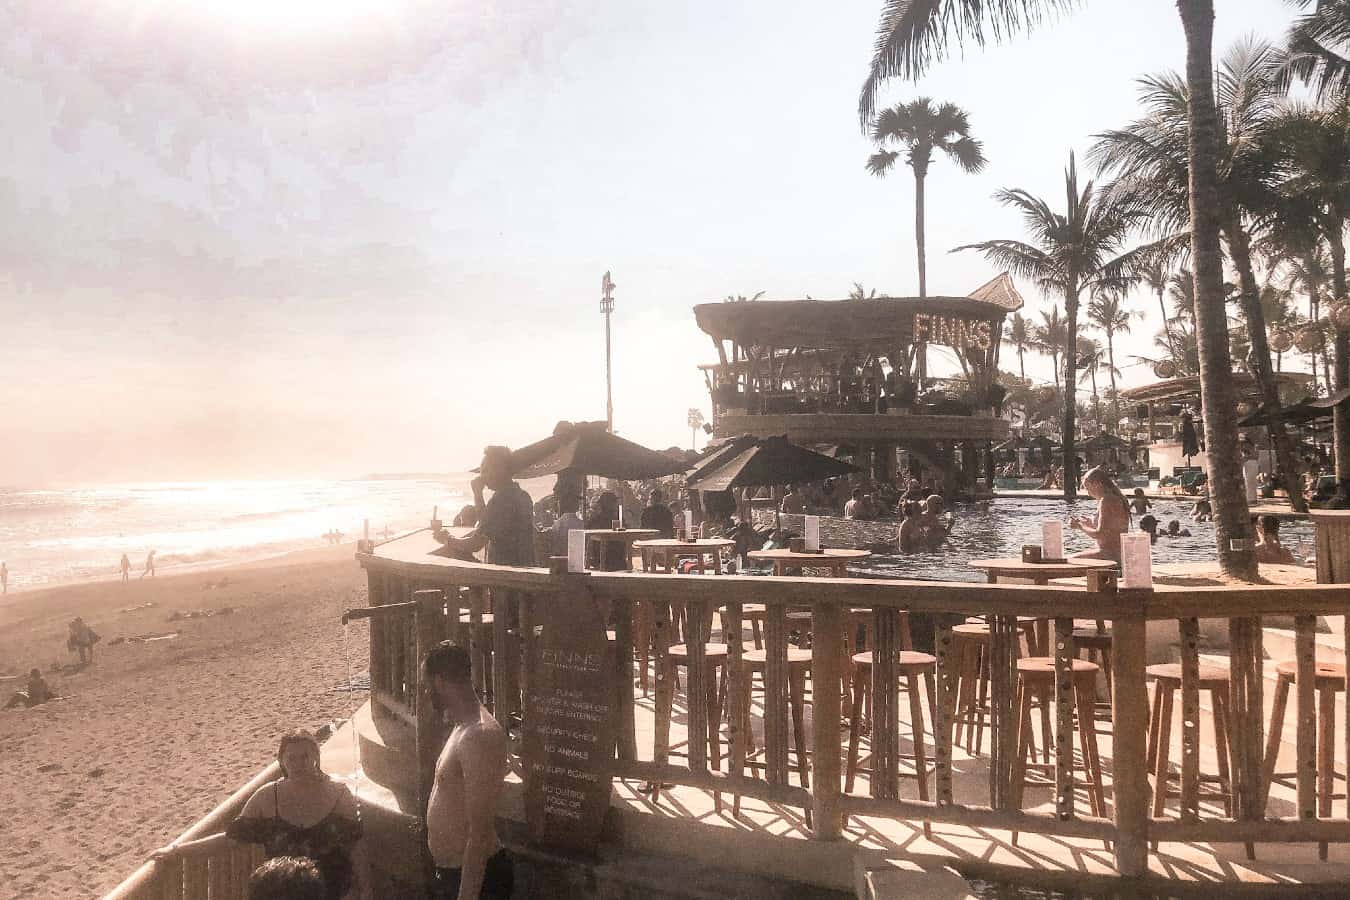 Finns Beach Club, A Popular Spot In Cangg Bali